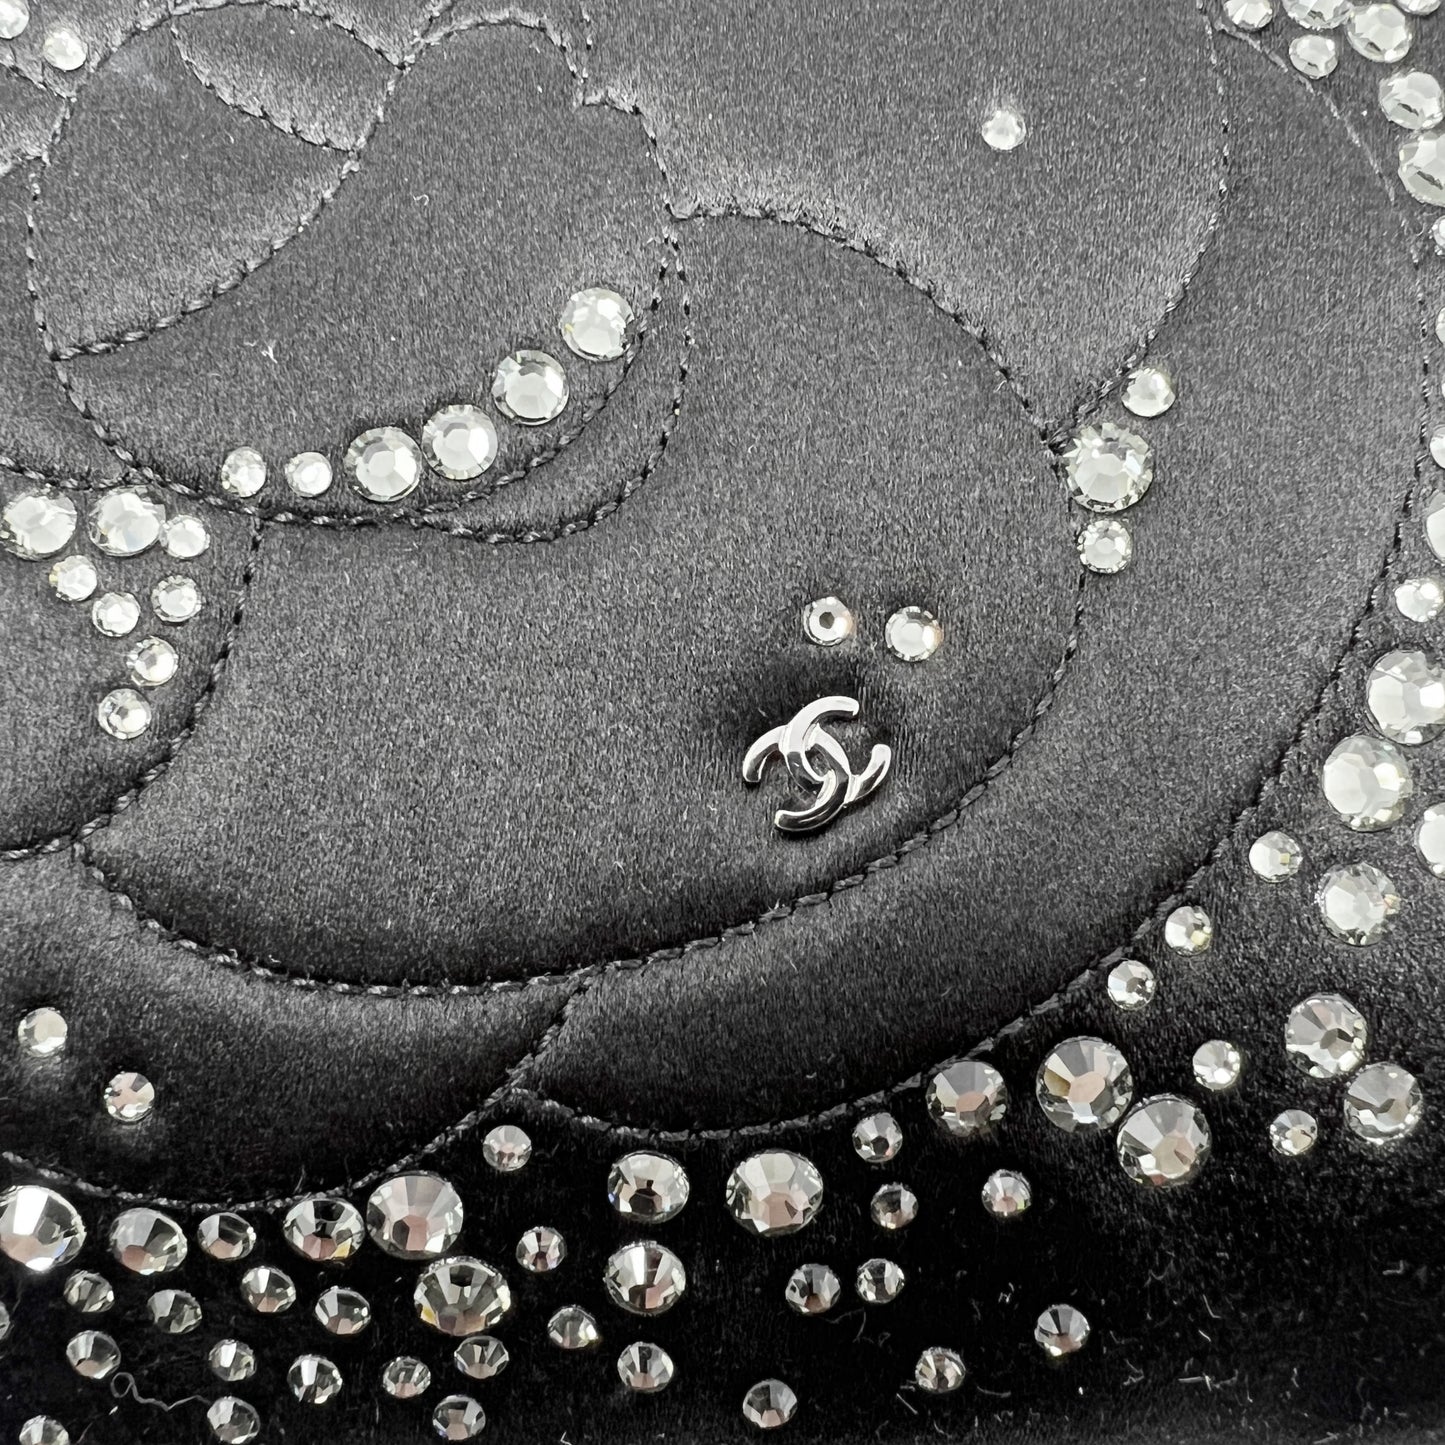 Chanel Camellia Black Satin Swarovski Crystal Embellished Strass Clutch Bag